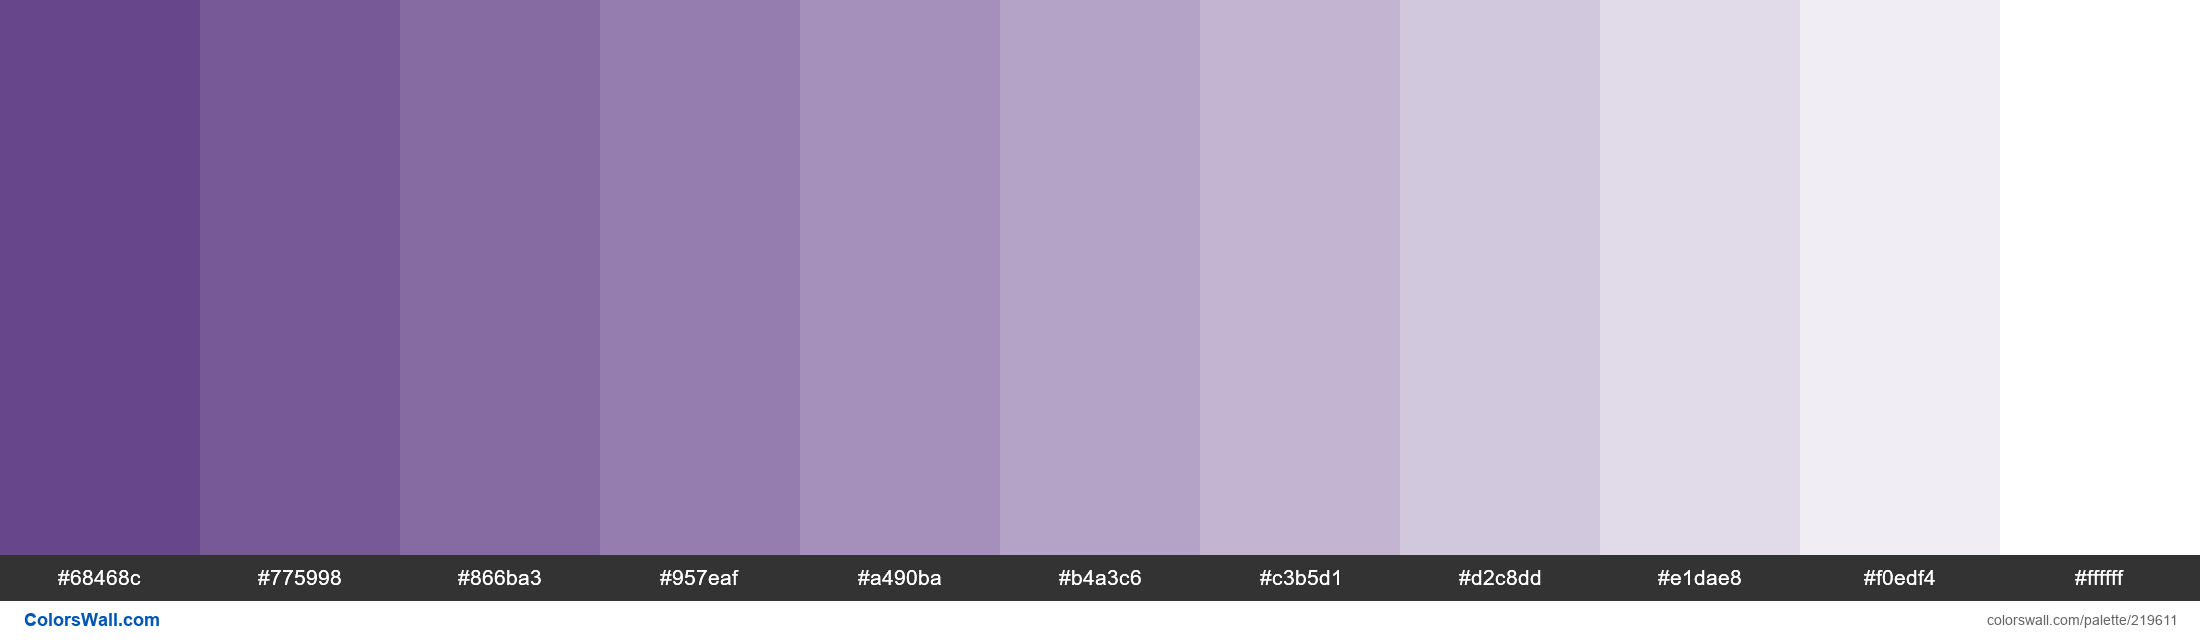 Misty Lilac color #b9b1c2 hex color - Violet color - Warm color b9b1c2 